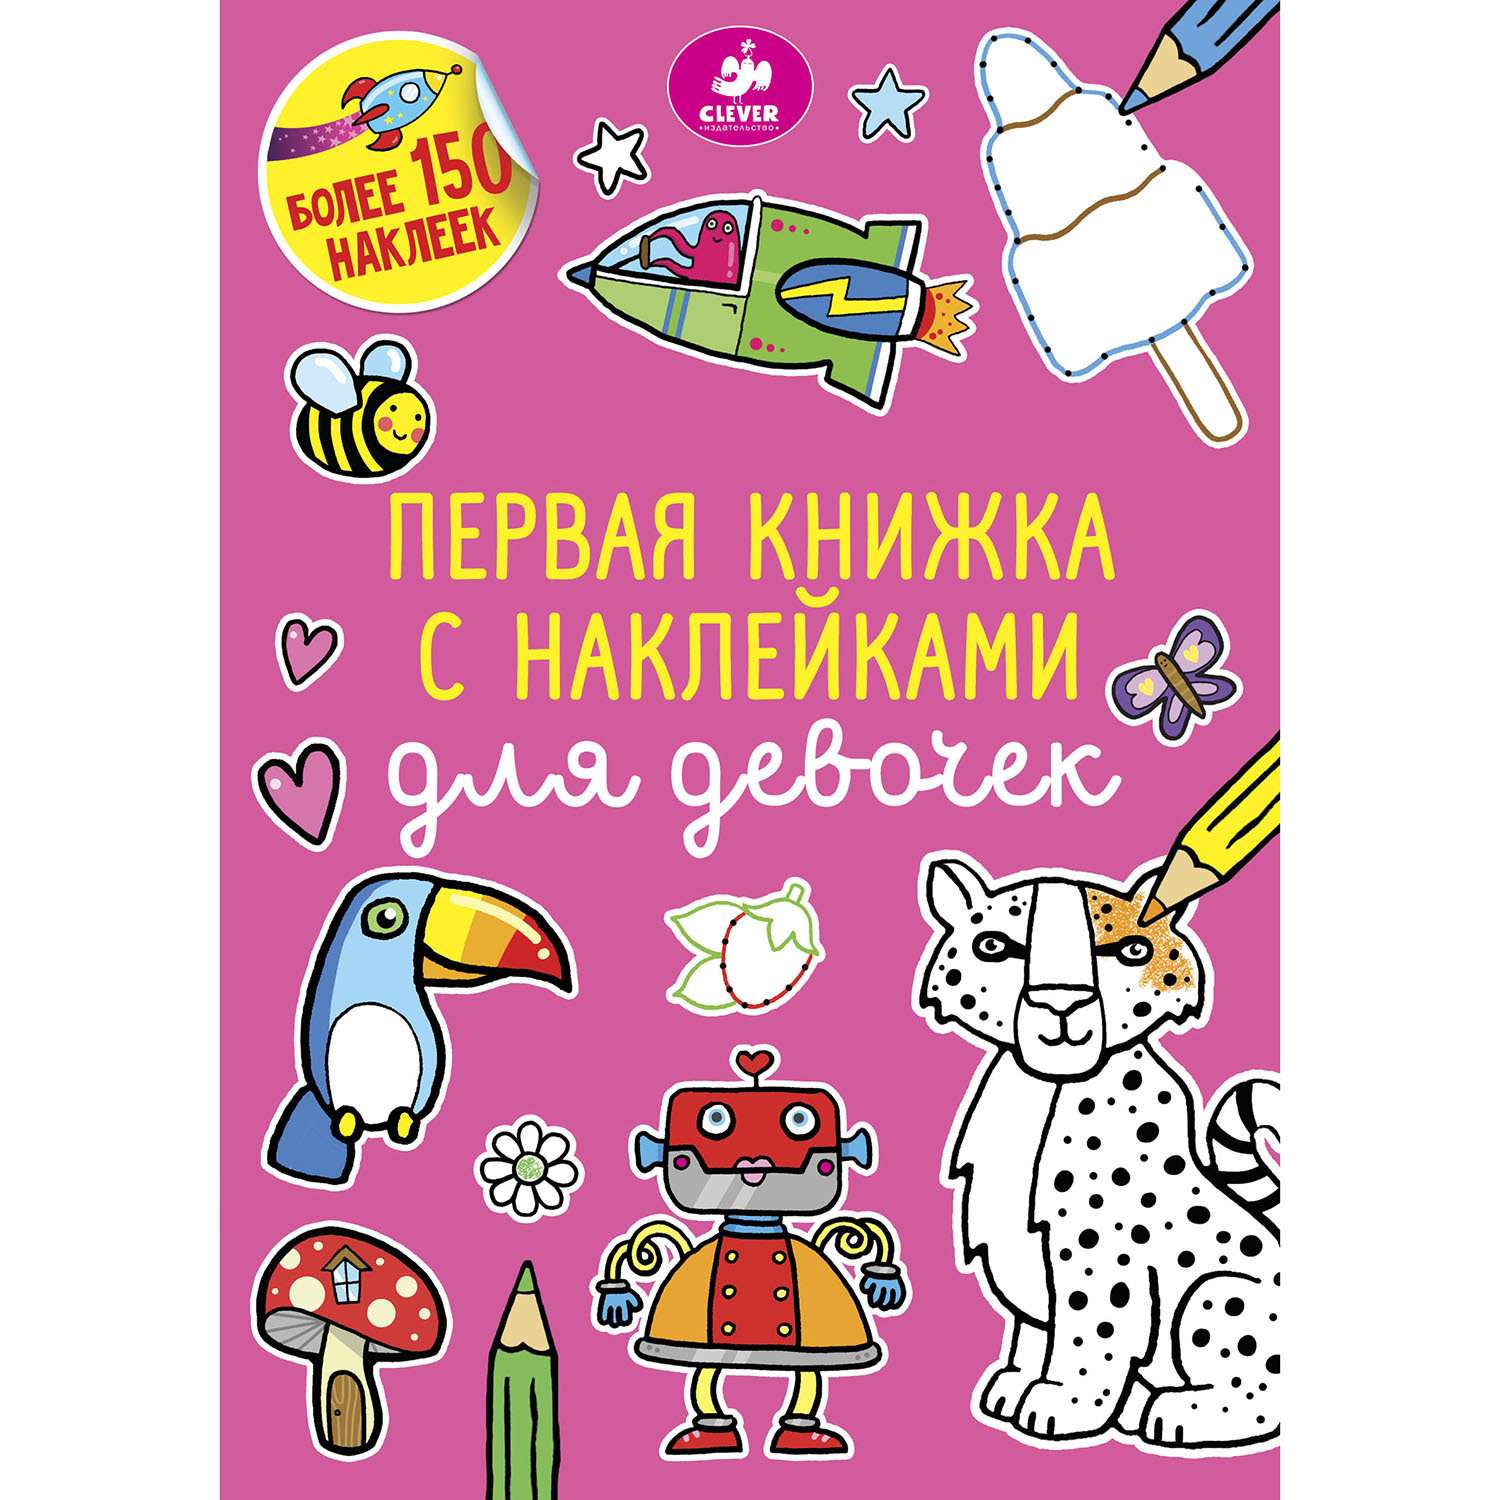 Раскраска Clever Первая книжка с наклейками для девочек 375 - фото 1